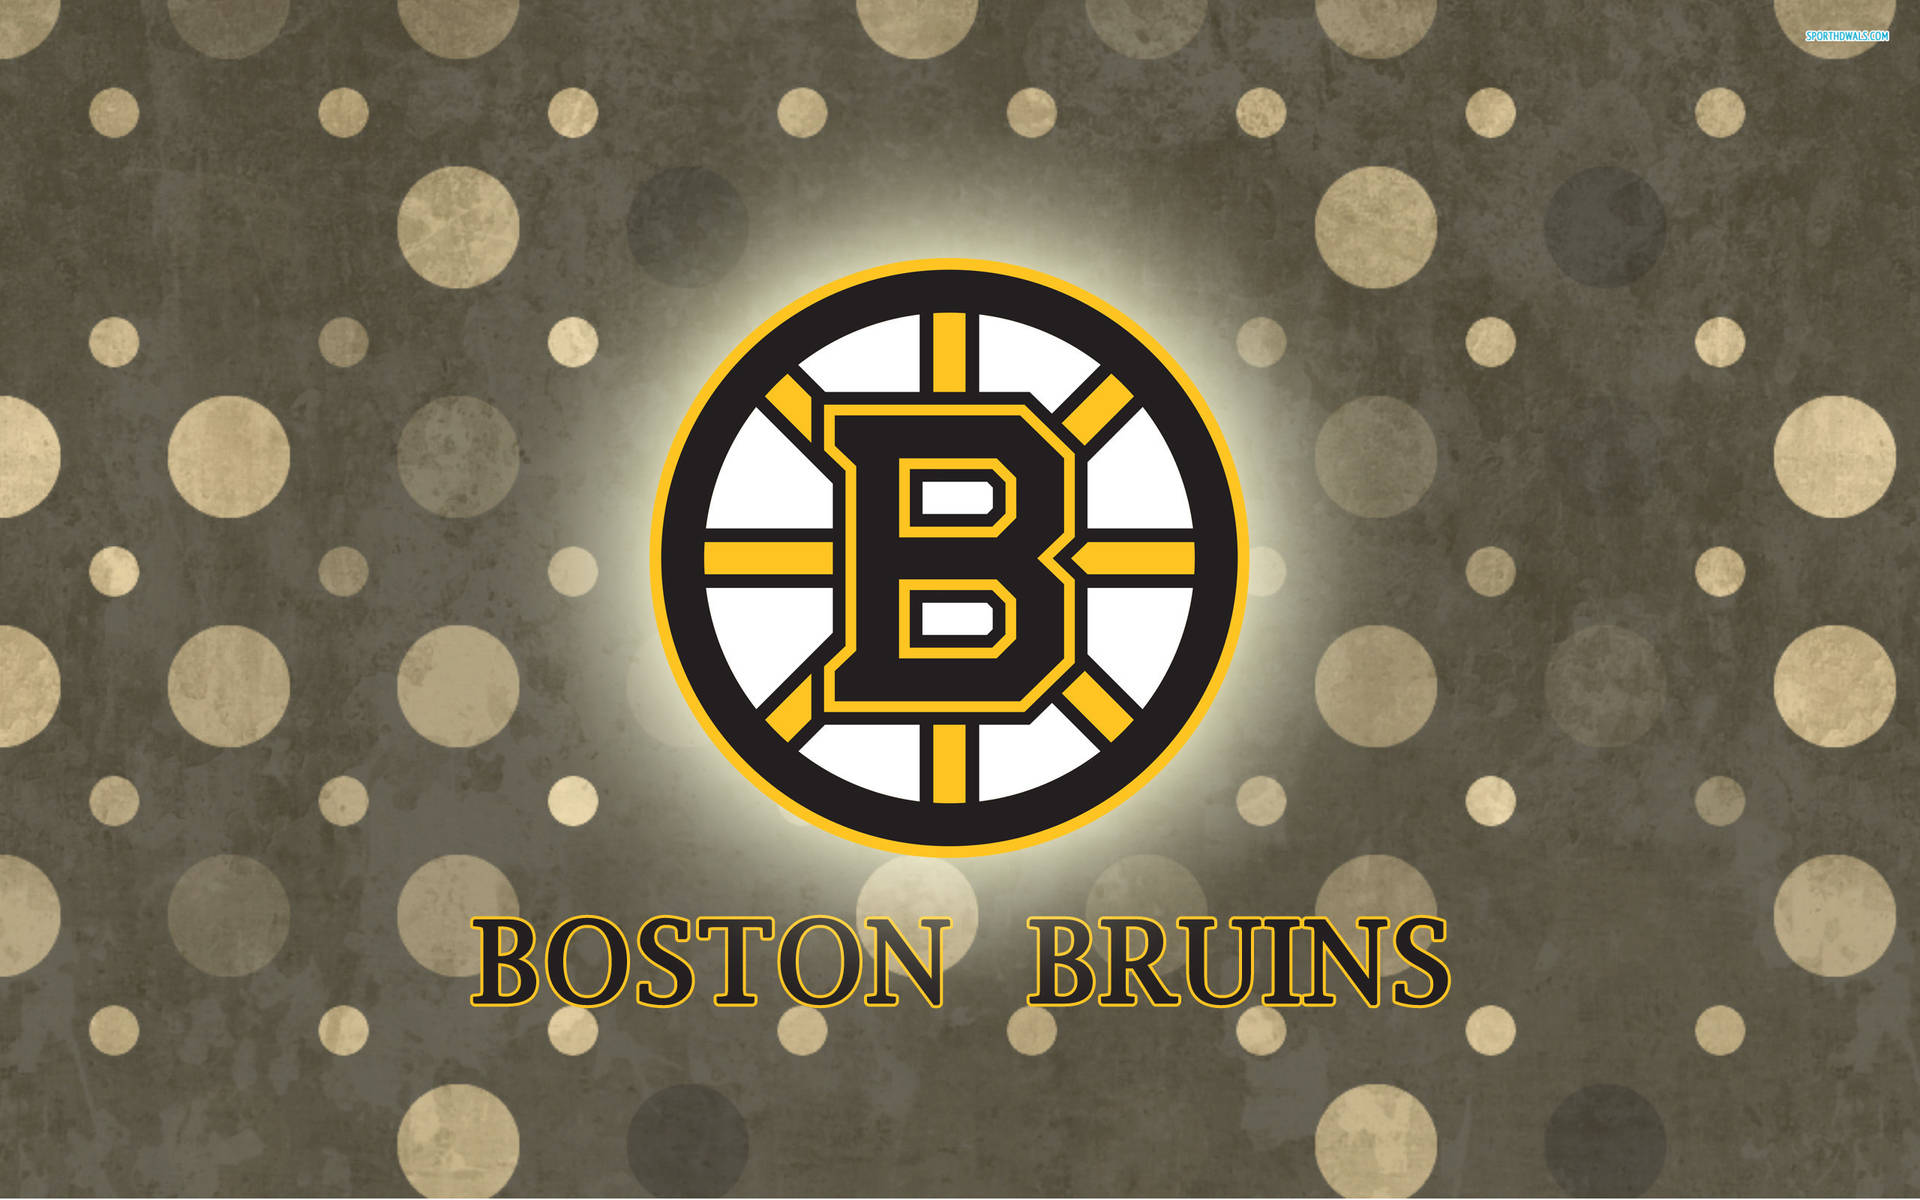 Bostonbruins Logo A Pois Polka. Sfondo